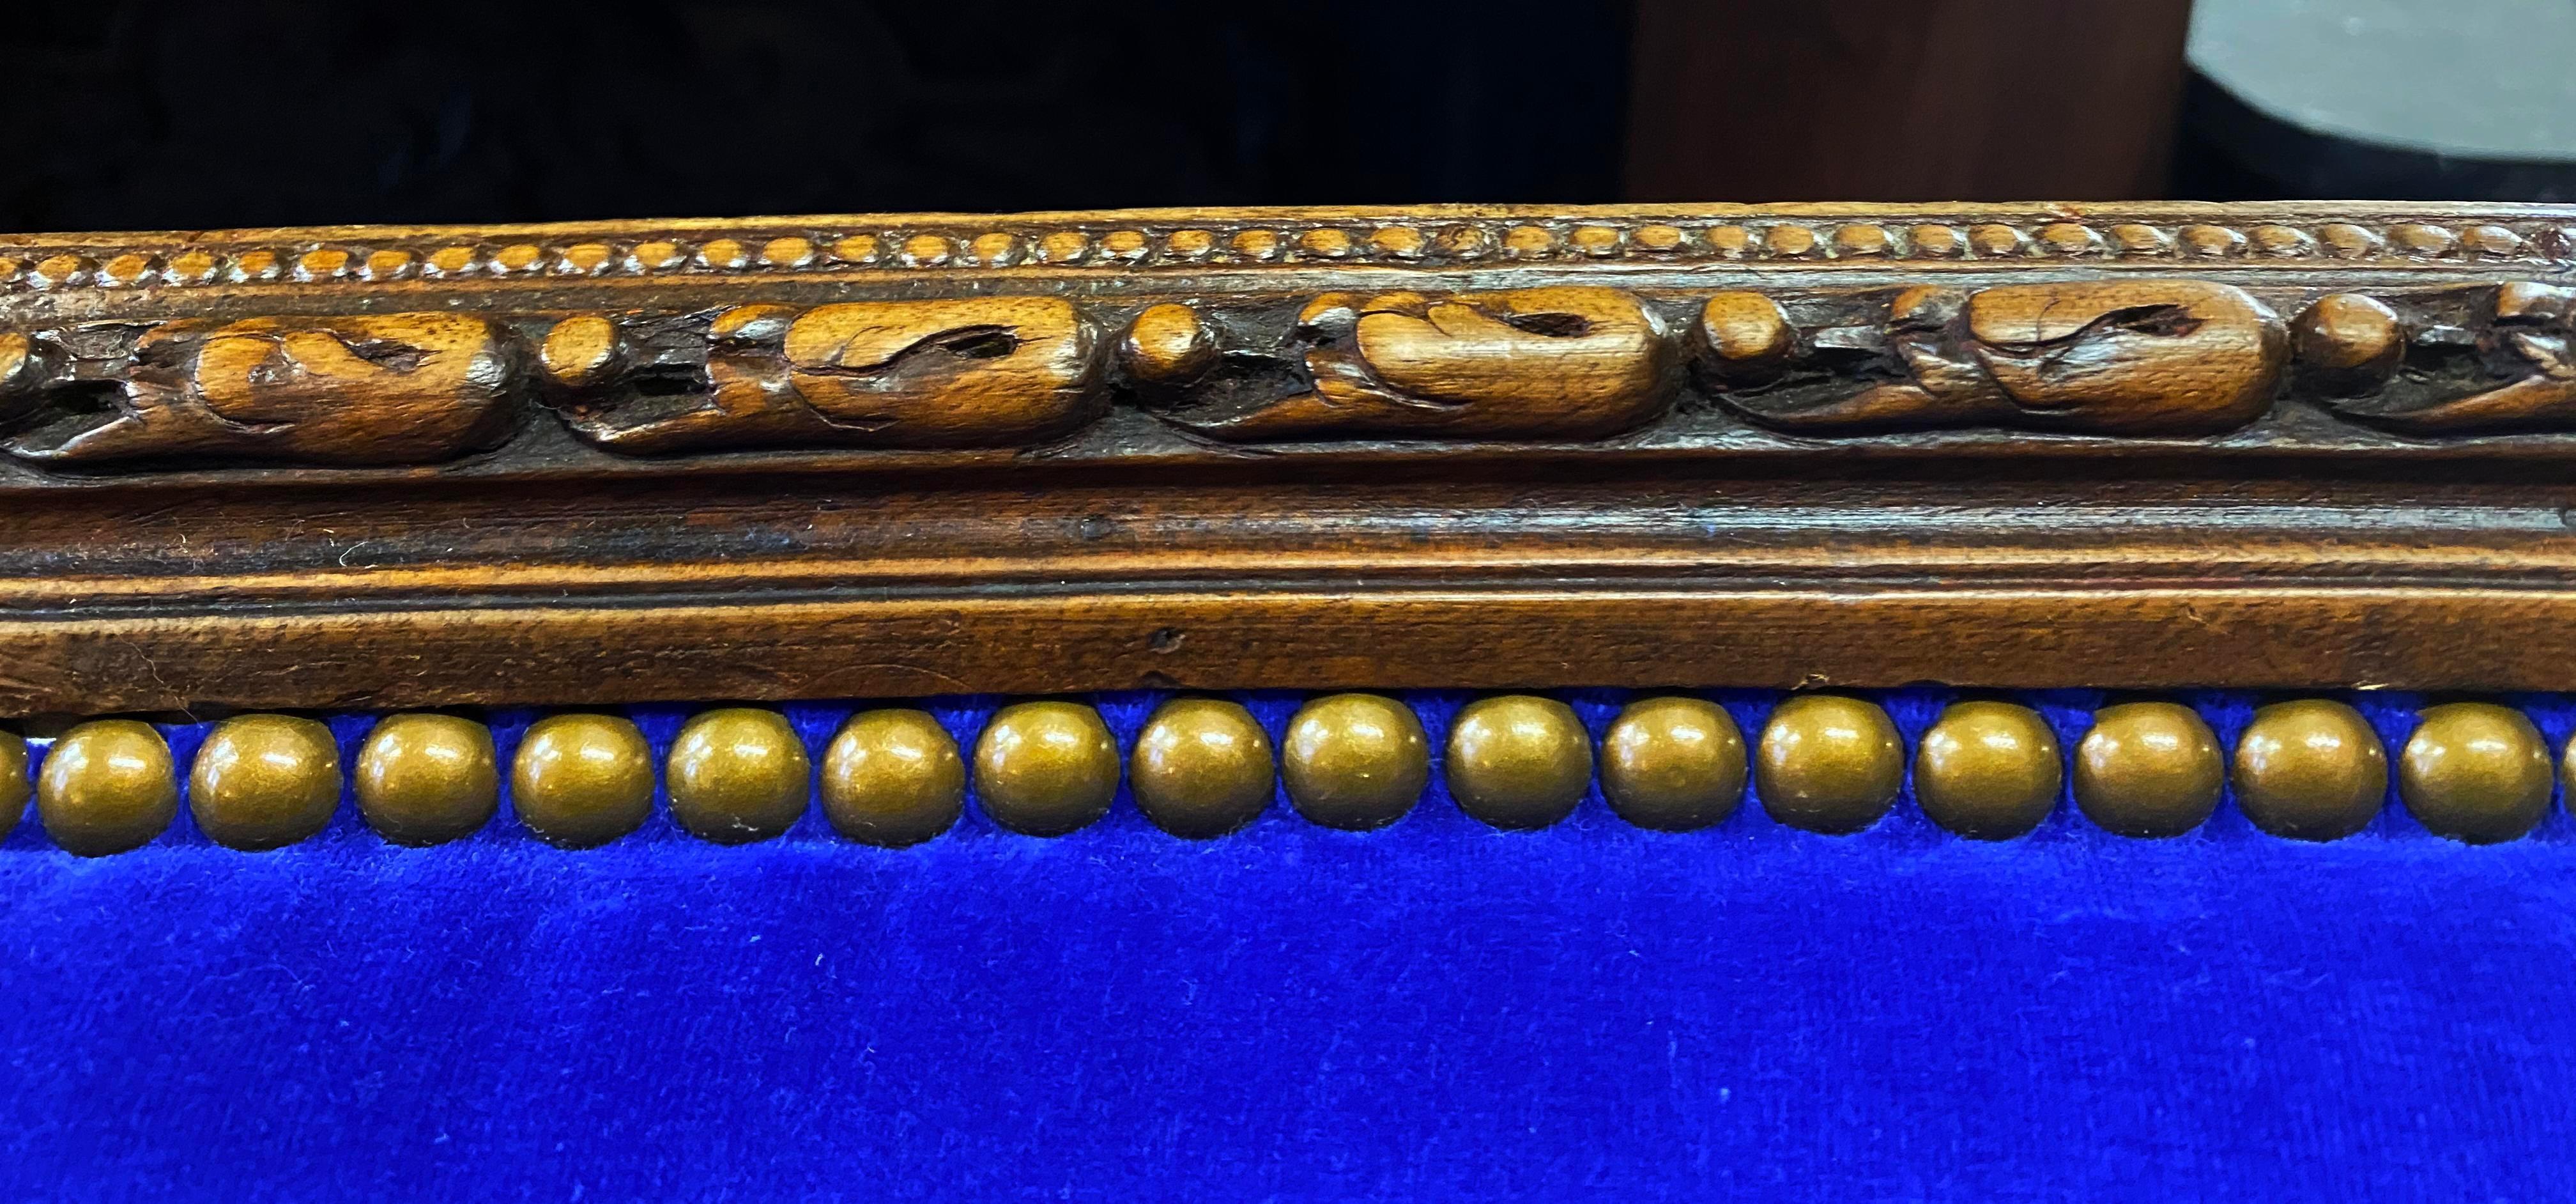 Silla estampada de principios del siglo XVIII Luis XVI Duchesse Brisee Longue francesa Bergère Tallado a mano en venta